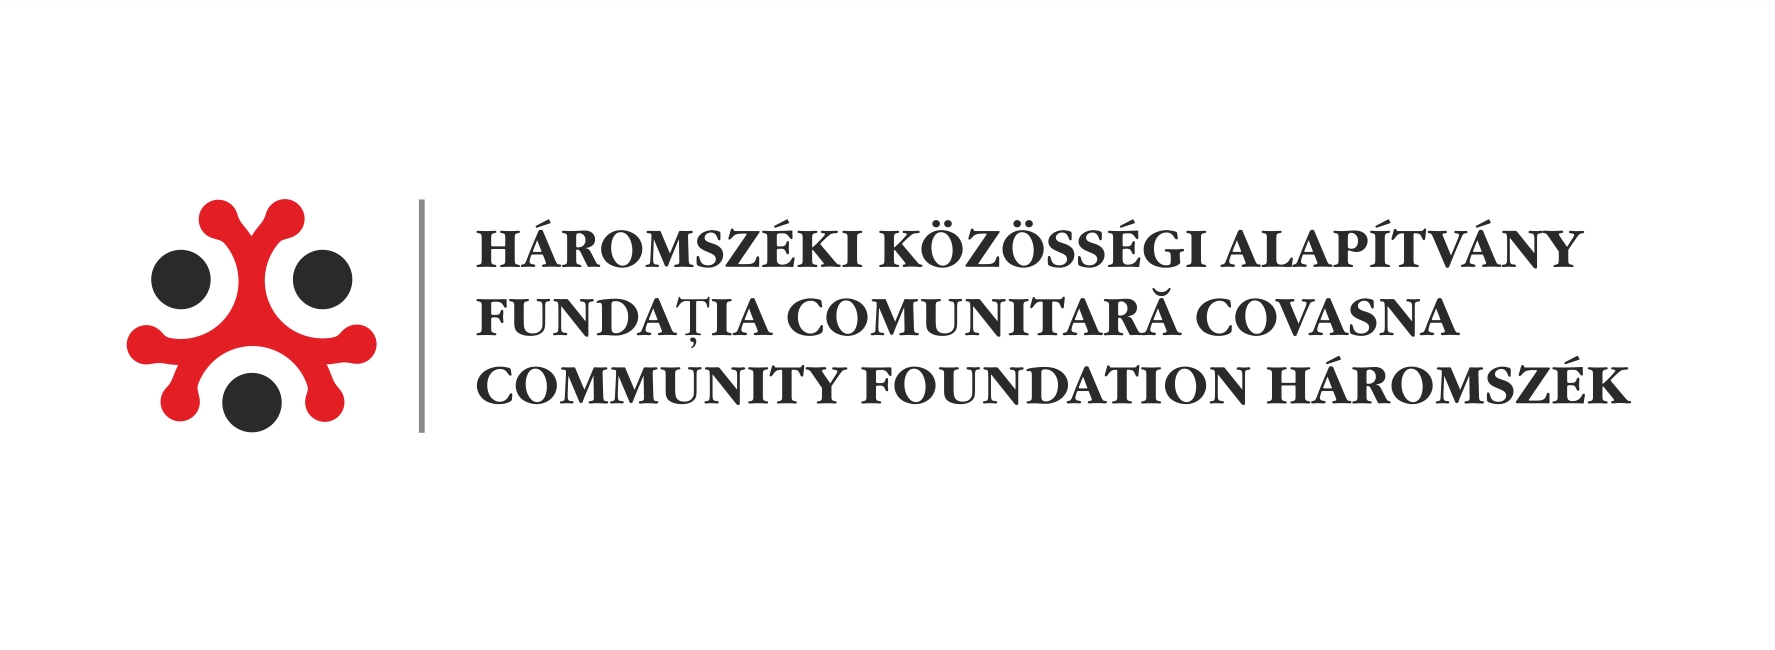 Fundatia Comunitara Covasna/Háromszéki Közösségi Alapítvány logo